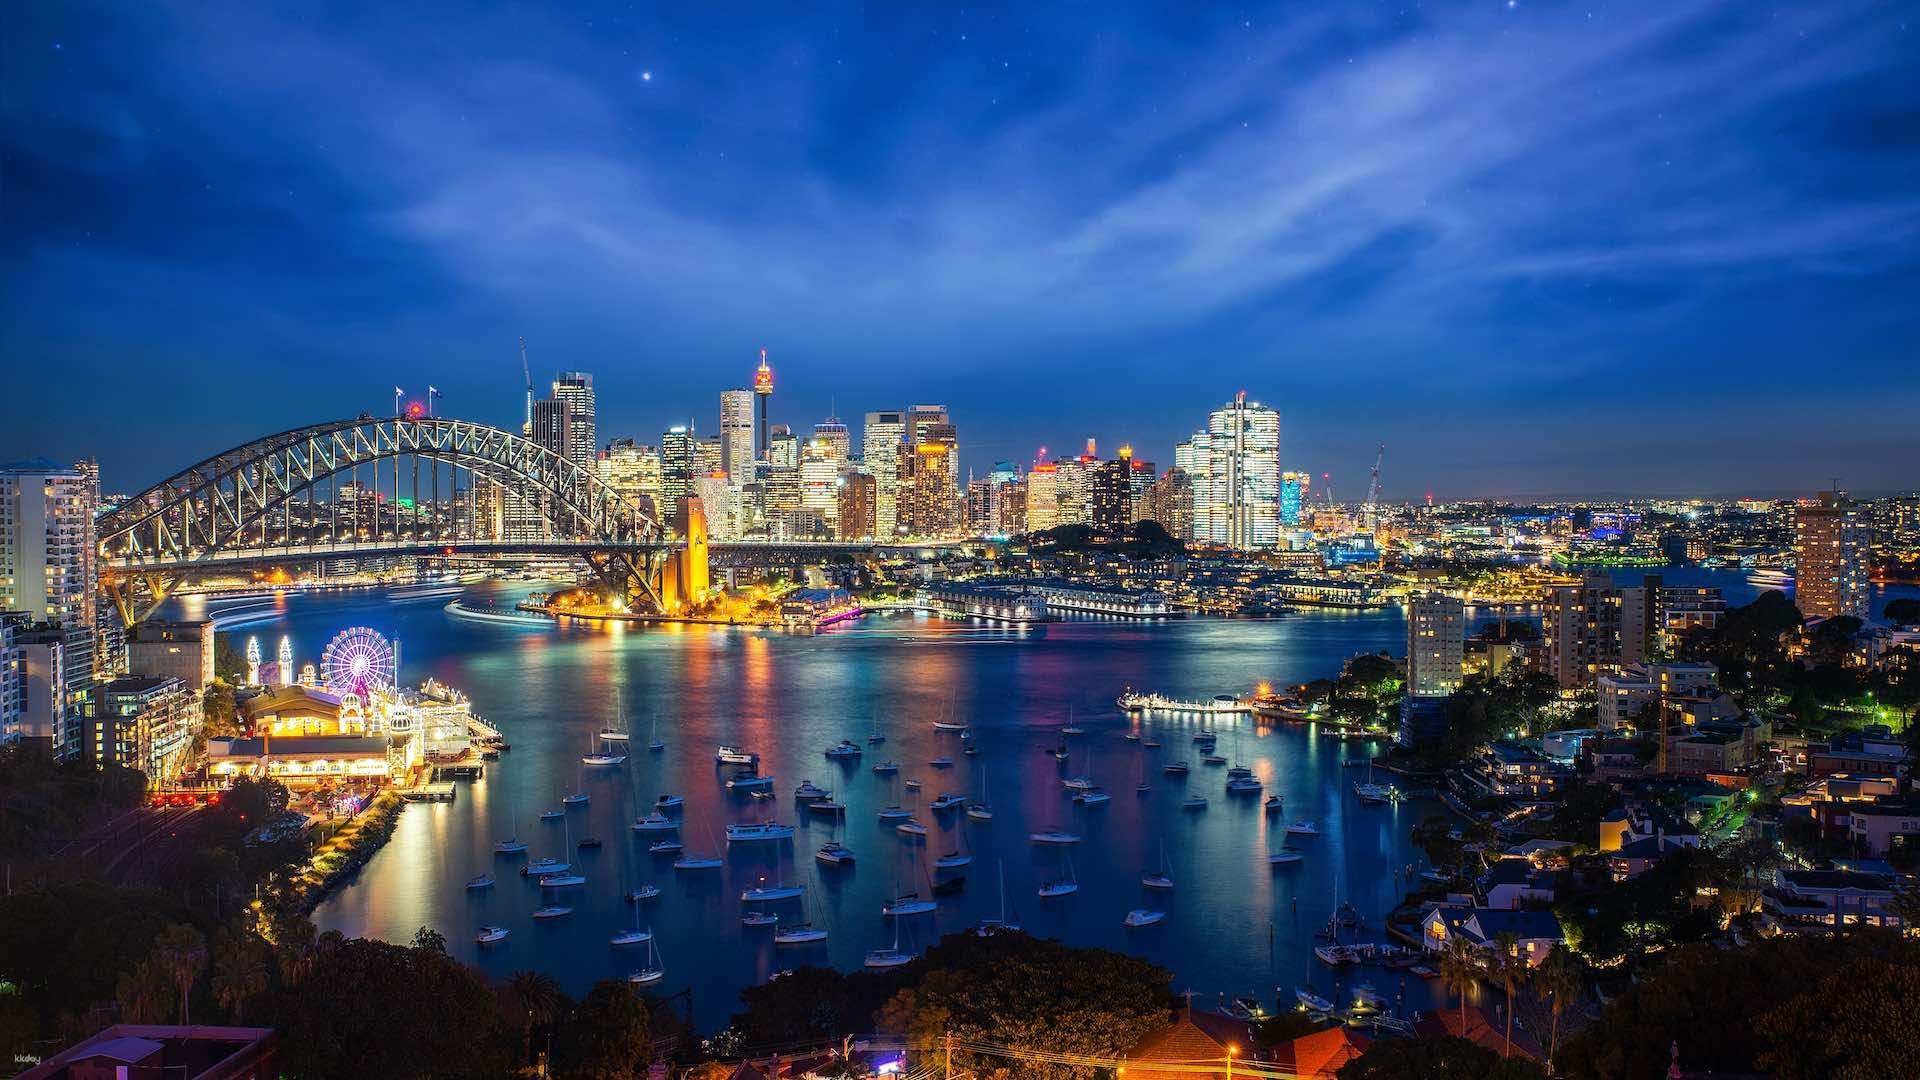 澳洲-雪梨夜遊雪梨塔 360° 觀景台(英文或國語服務)| 悉尼燈光節| 限時優惠中